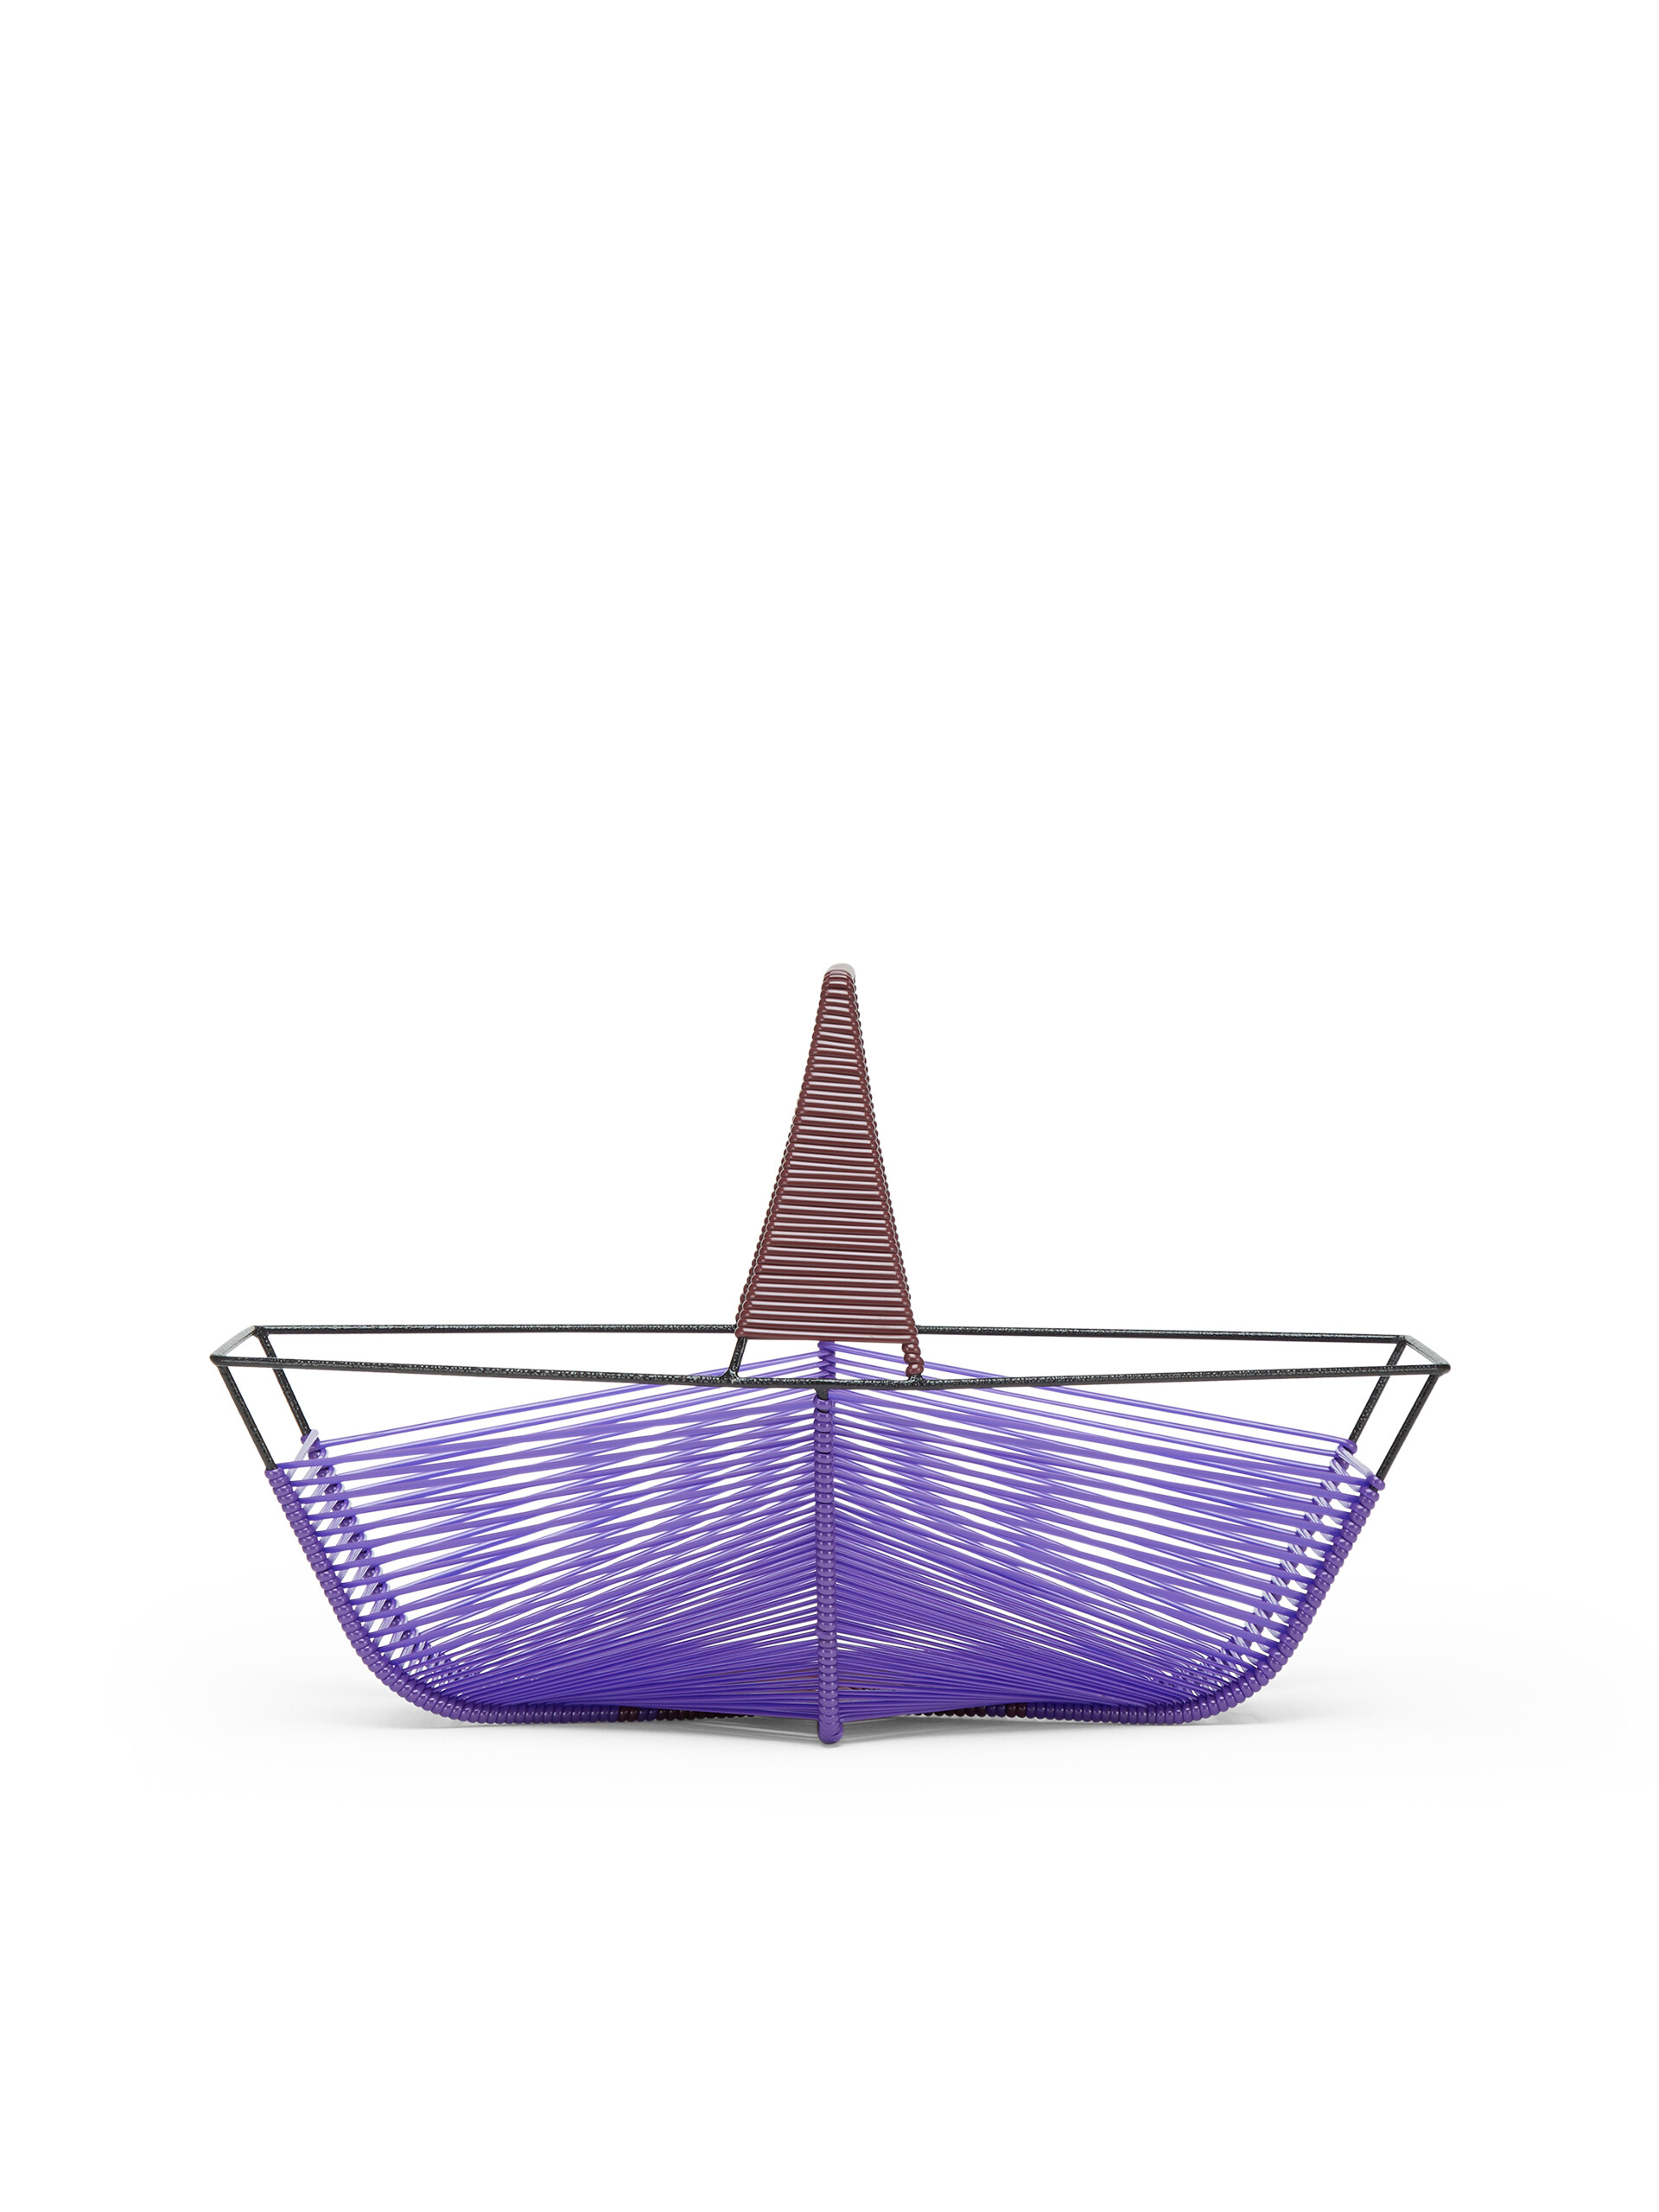 Frutero hexagonal MARNI MARKET violeta y marrón - Accesorios - Image 3